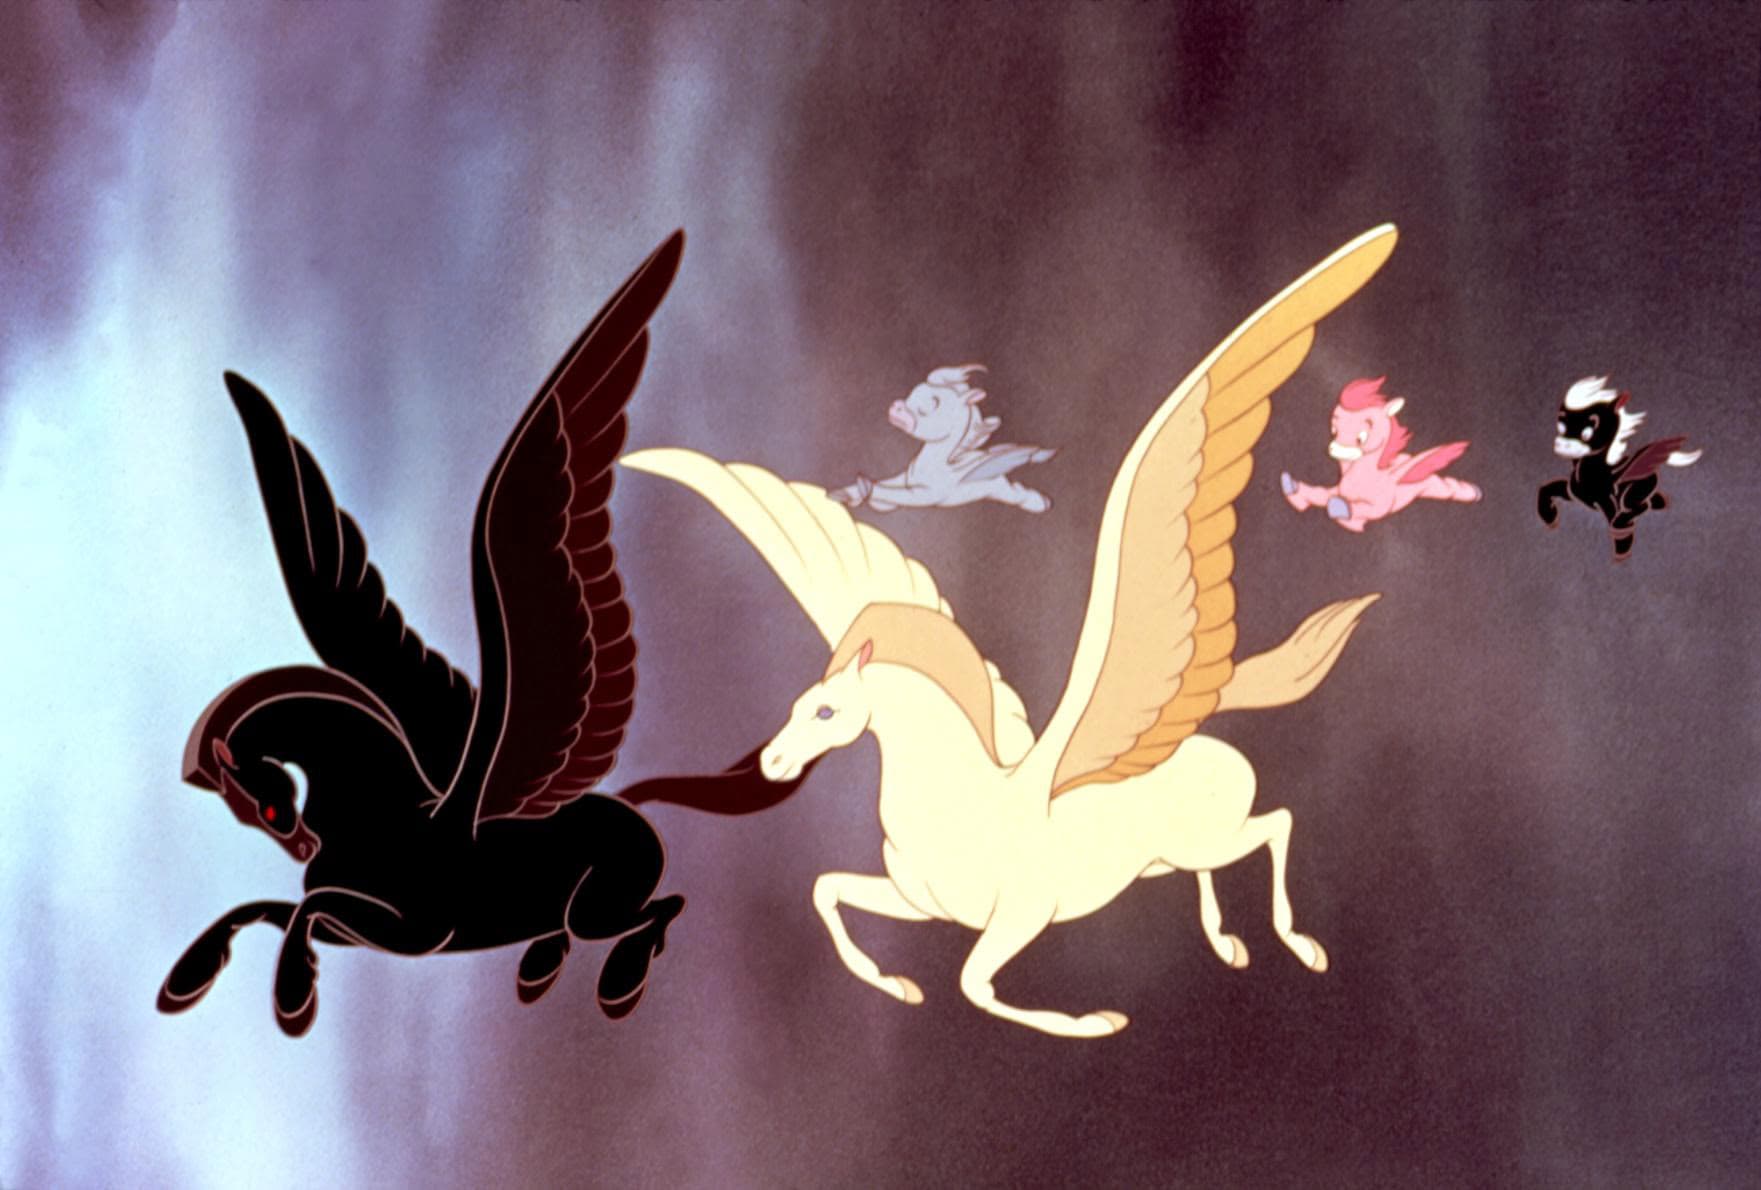 Una scena del film della Disney "Fantasia" (1940). I Pegaso danzano nell'aria sulle note della Pastorale di Beethoven